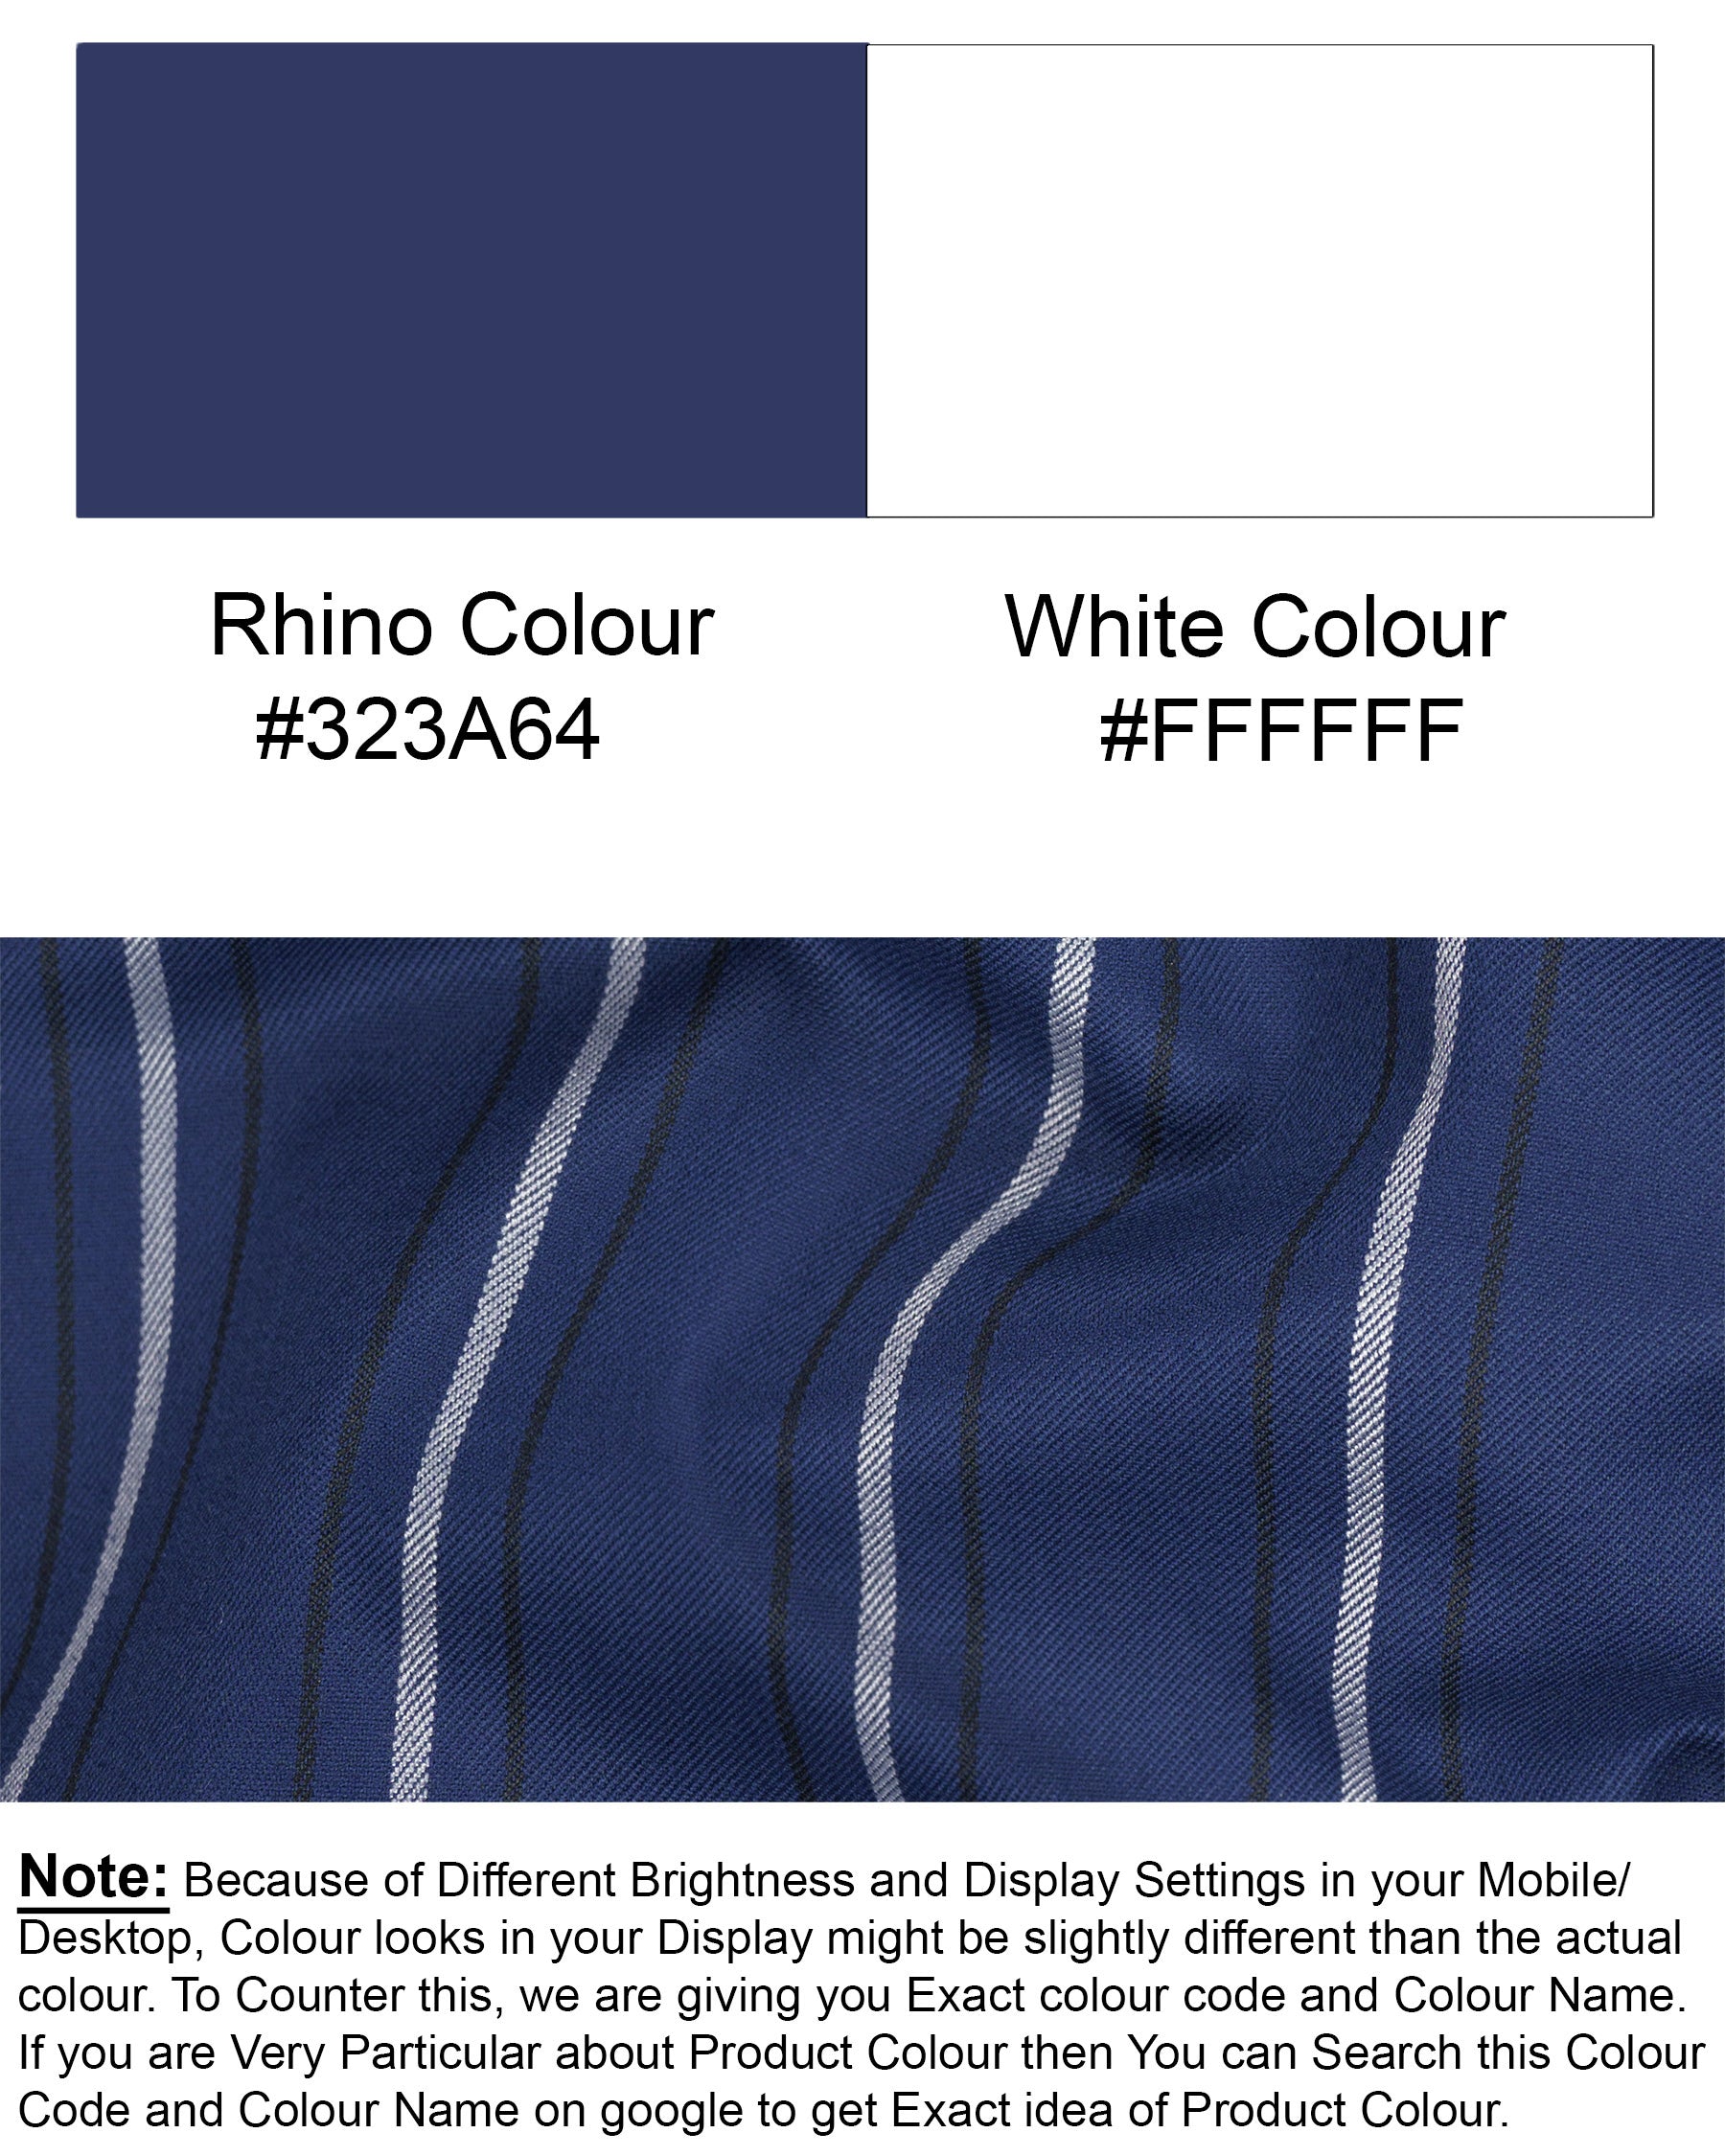 Rhino Blue Striped Wool Rich Blazer BL1596-SB-36, BL1596-SB-38, BL1596-SB-40, BL1596-SB-42, BL1596-SB-44, BL1596-SB-46, BL1596-SB-48, BL1596-SB-50, BL1596-SB-52, BL1596-SB-54, BL1596-SB-56, BL1596-SB-58, BL1596-SB-60